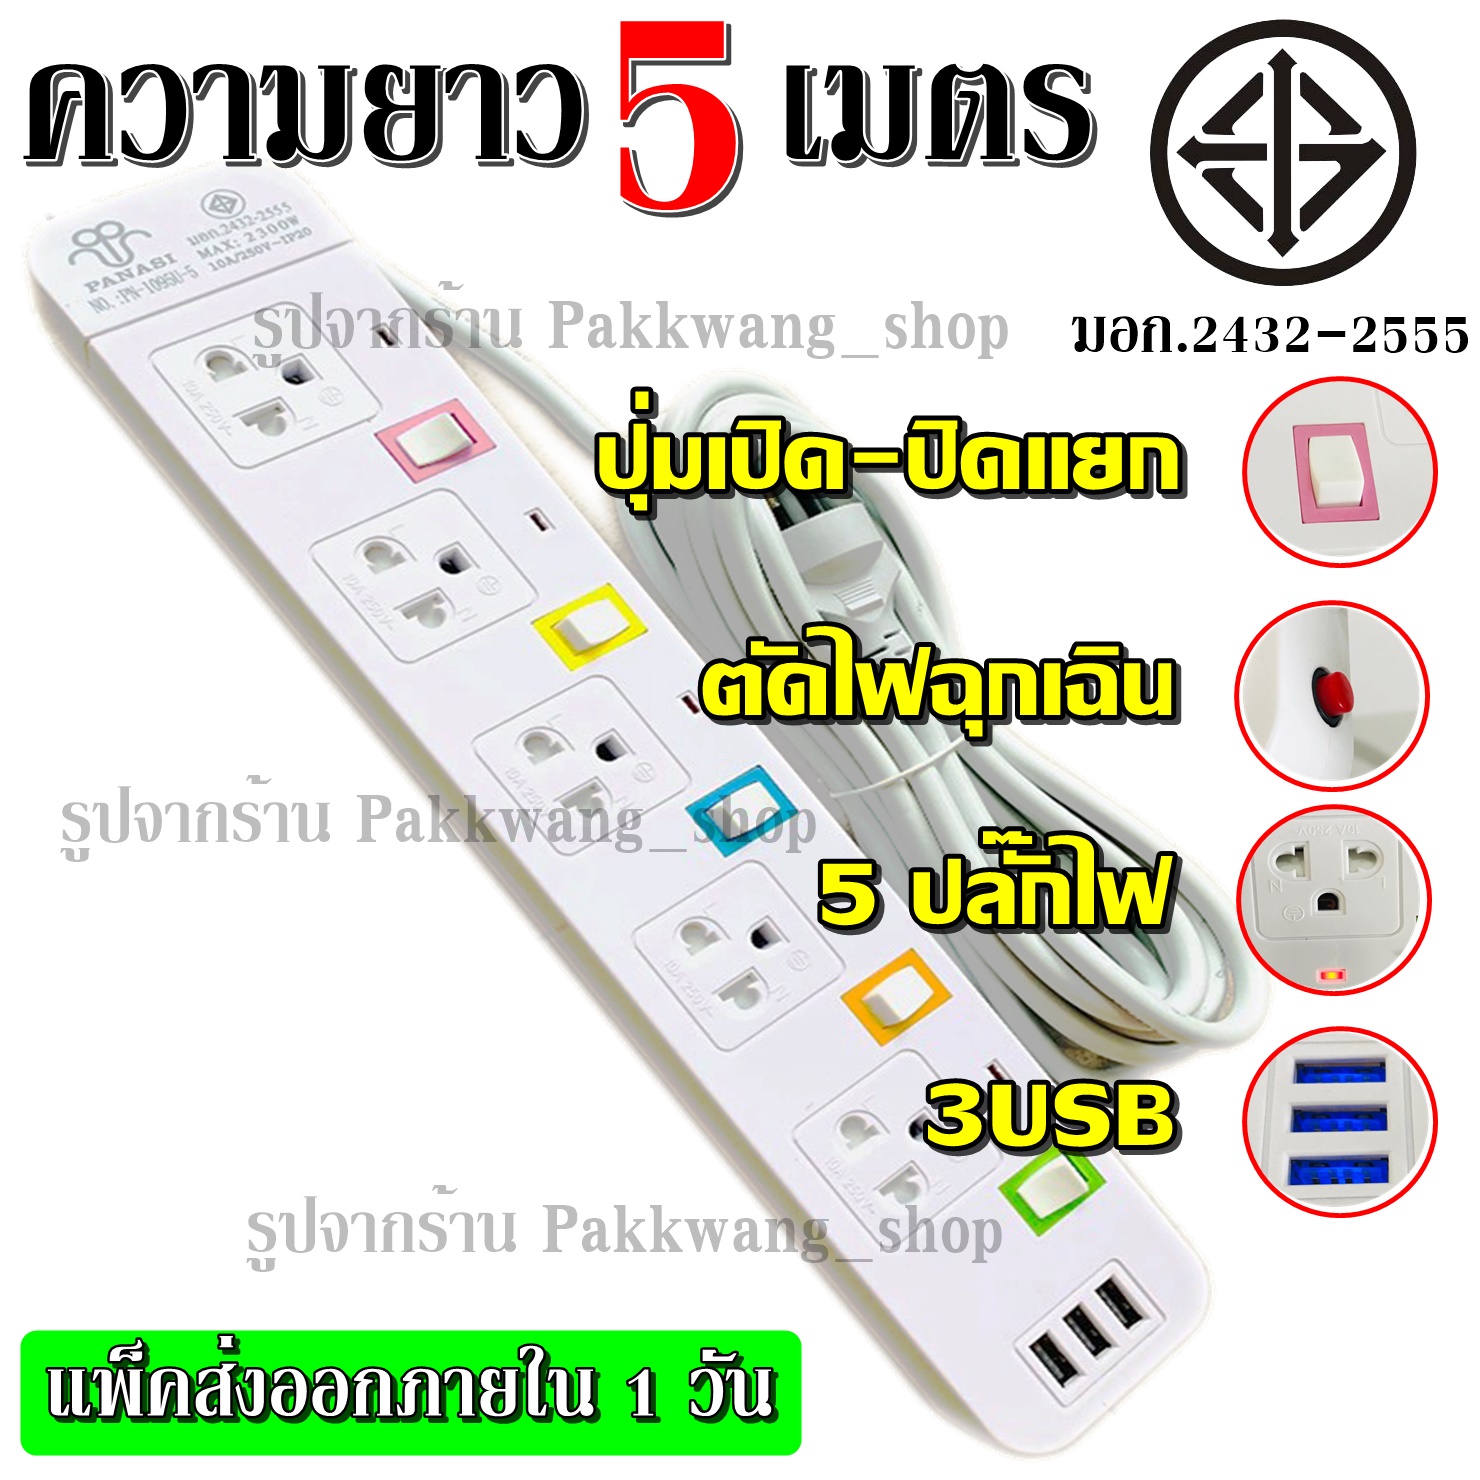 Plug 8 Shop พร้อมส่ง!!! ปลั๊กไฟ มอก.2432-2555 ((4 ช่อง 3 USB)) ปลั๊ก 2300w PANASI รุ่น PN-1094U PN-1093U PN-1095U วัสดุแข็งแรง สายไฟหนาแข็ง +เลือกความยาว+ 3เมตร 5เมตร